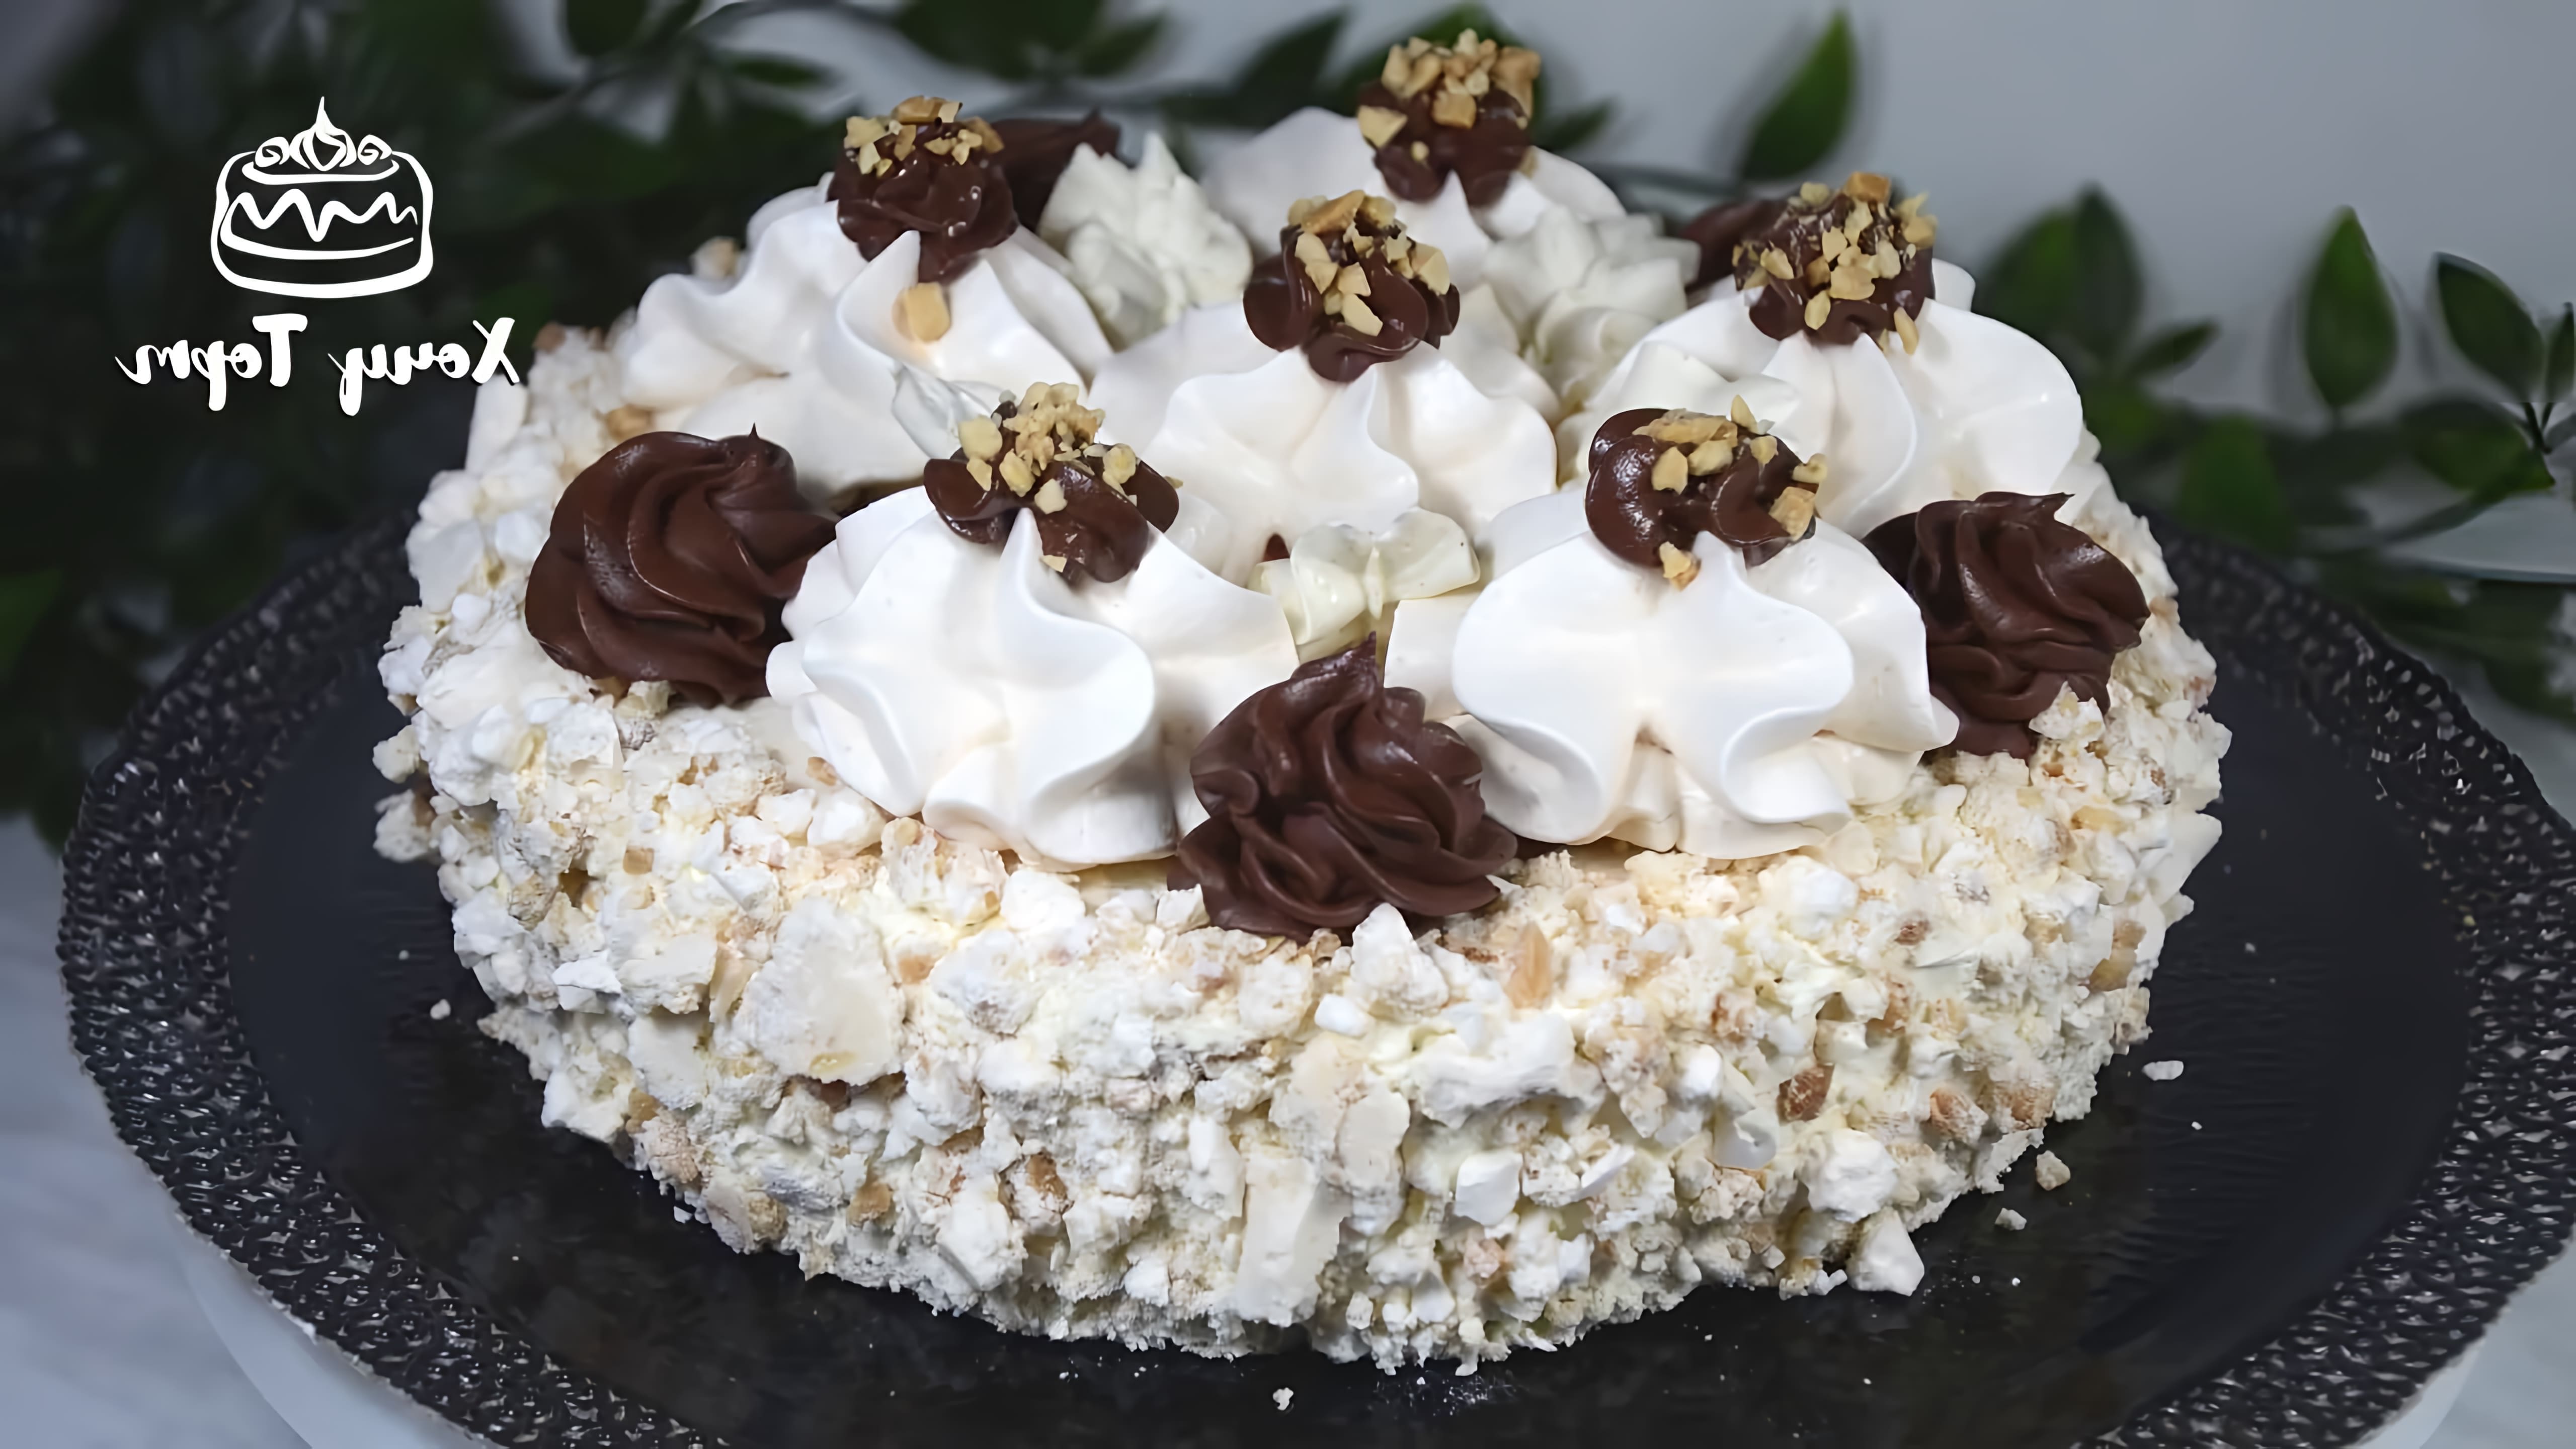 В этом видео демонстрируется рецепт классического торта "Полет", который готовится из безе с орехами и кремом Шарлотт